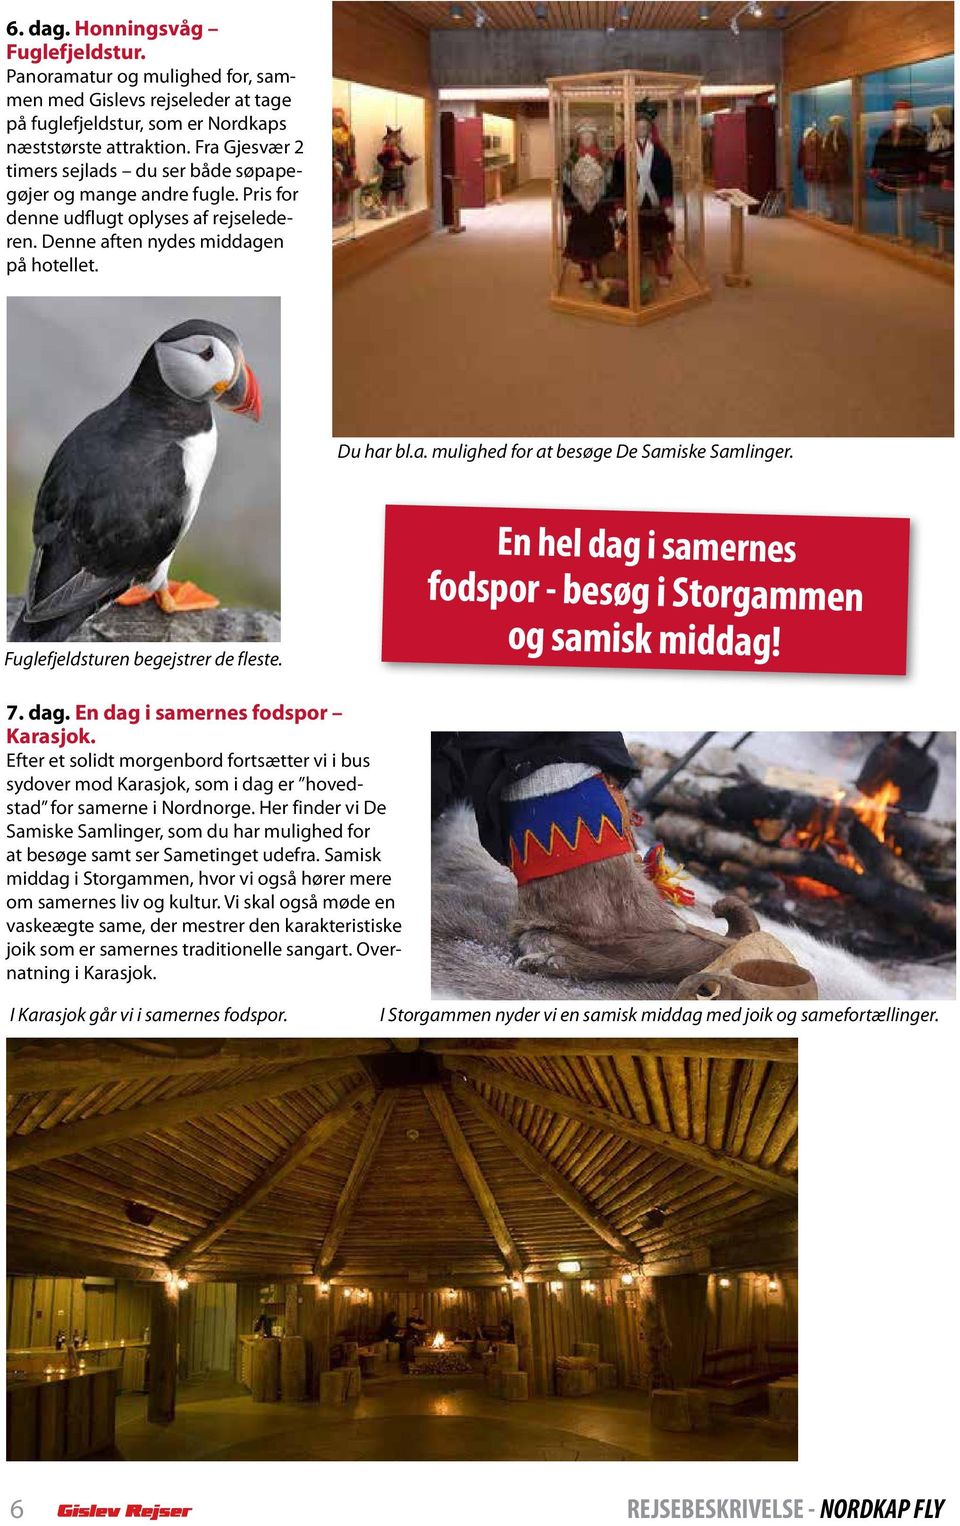 Fuglefjeldsturen begejstrer de fleste. En hel dag i samernes fodspor - besøg i Storgammen og samisk middag! 7. dag. En dag i samernes fodspor Karasjok.